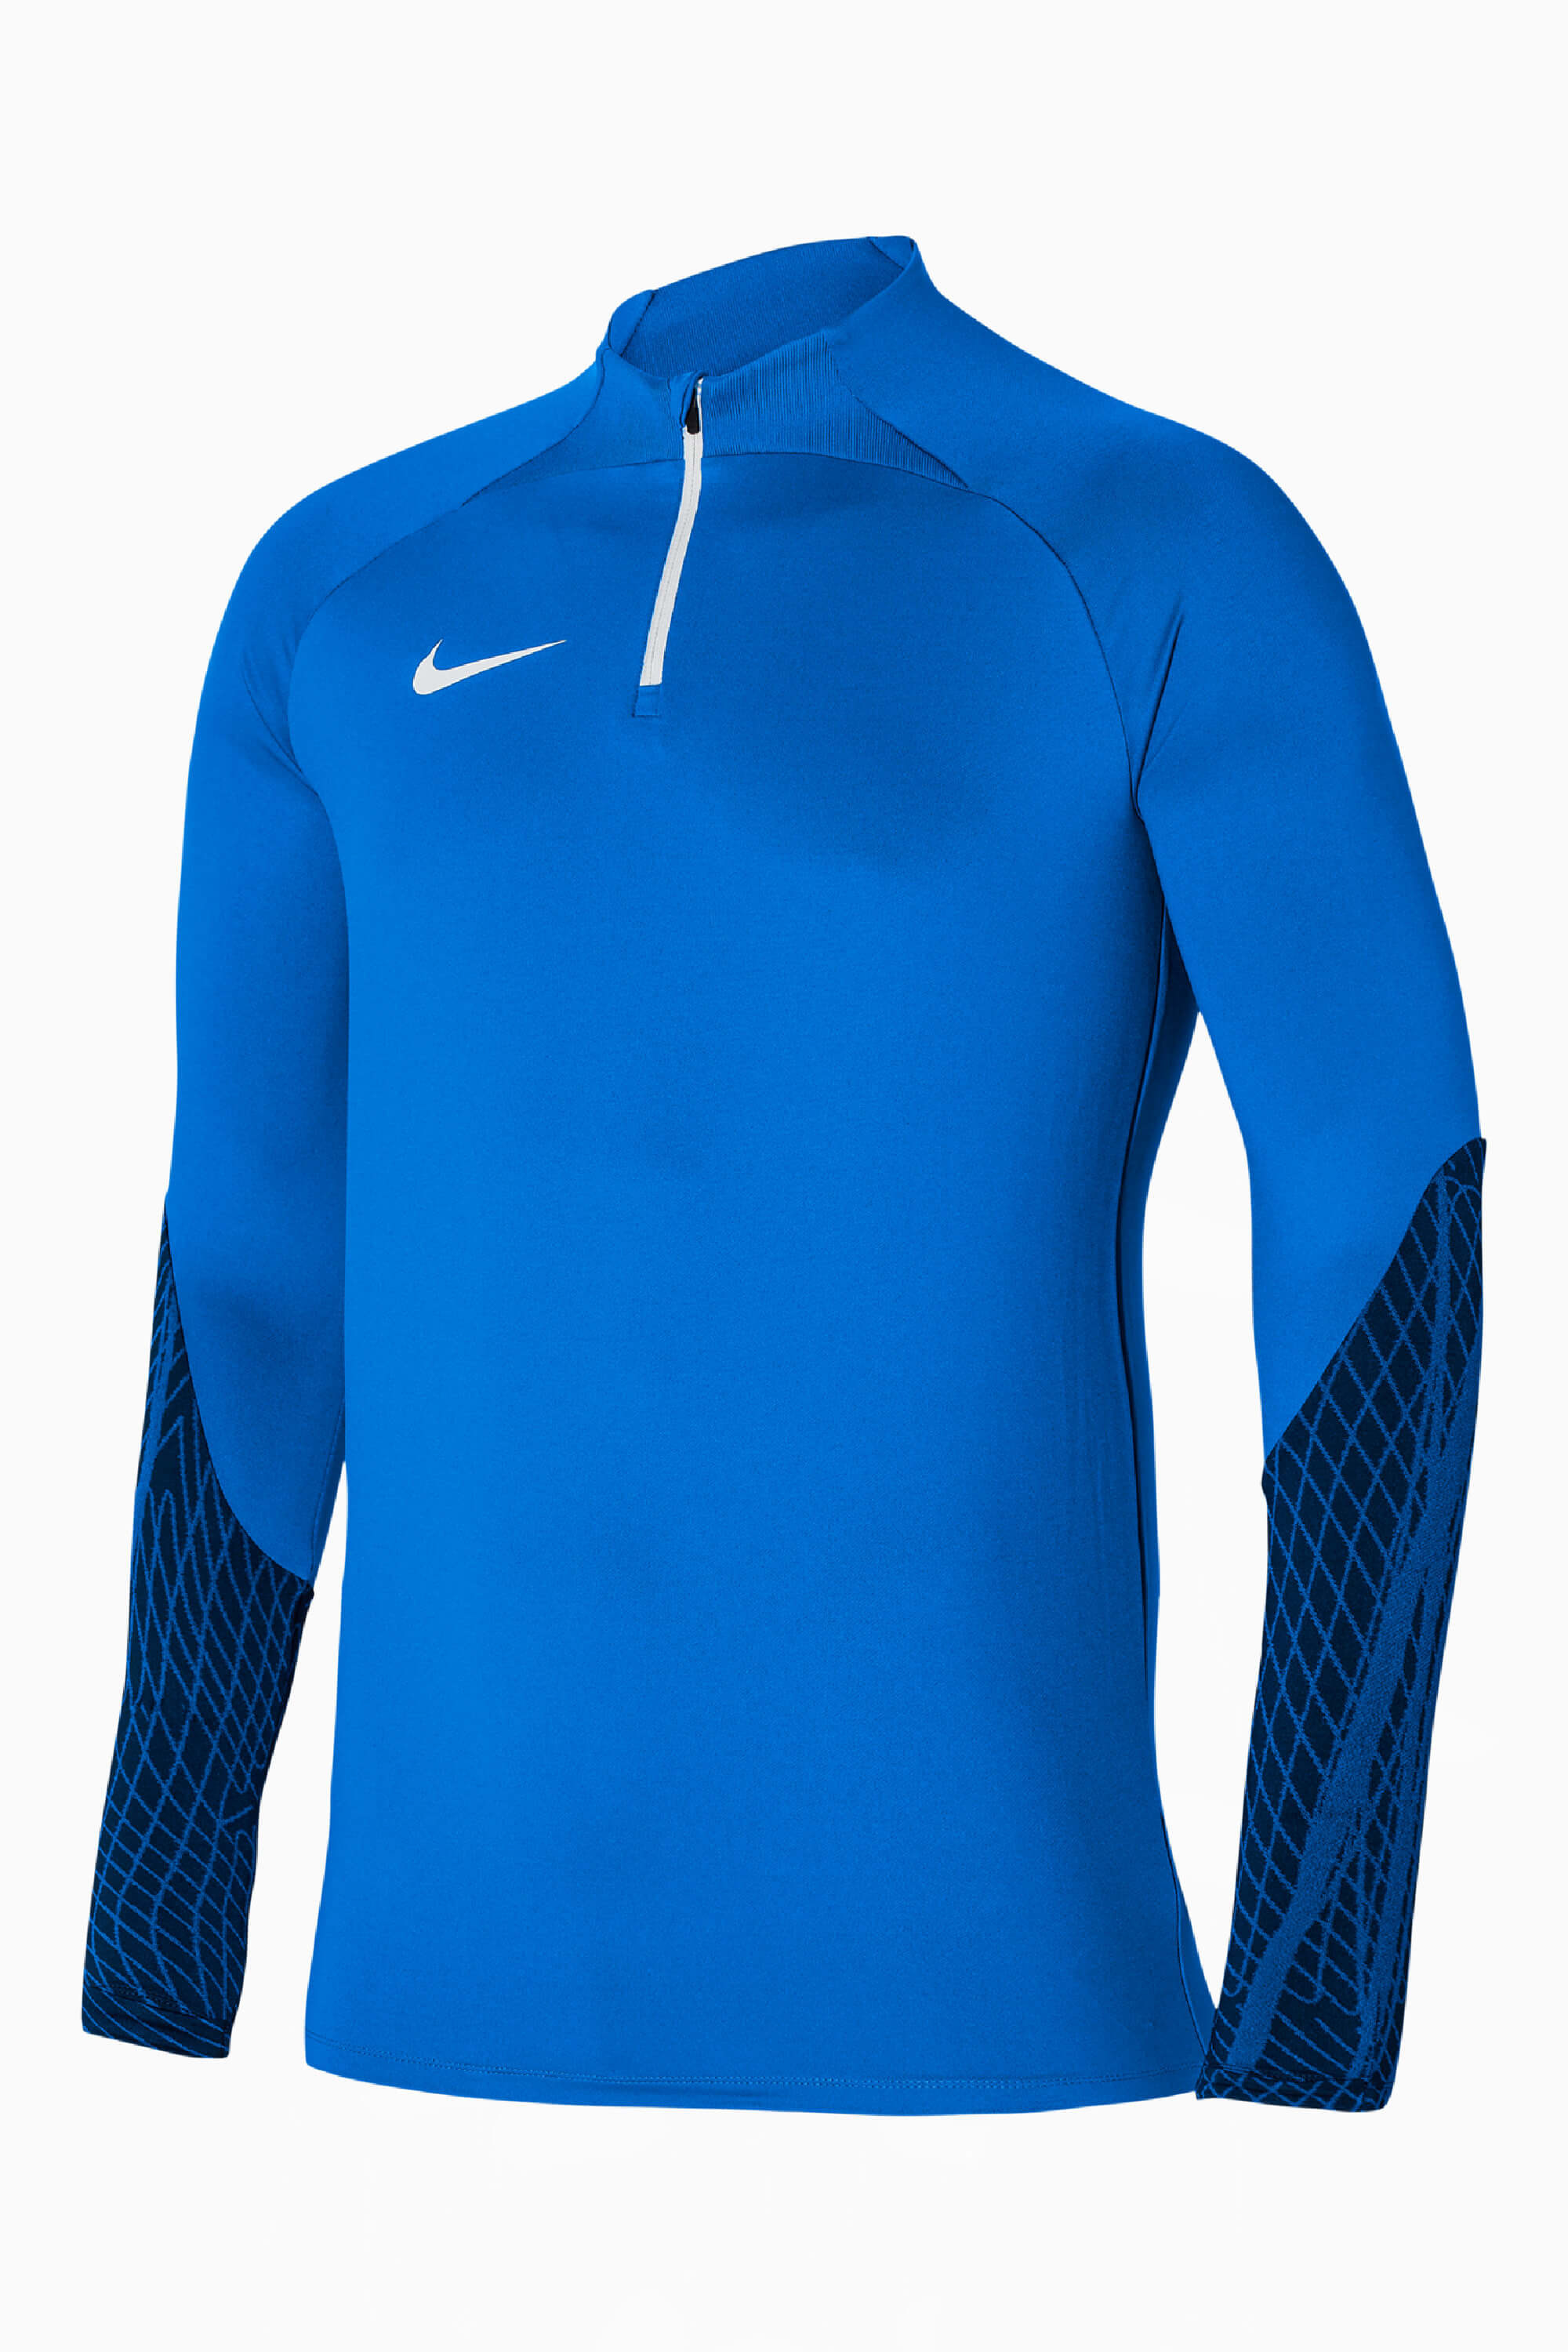 Sweat Nike Dri-Fit Strike 23 pour Enfant - DR2304-463 - Bleu Royal